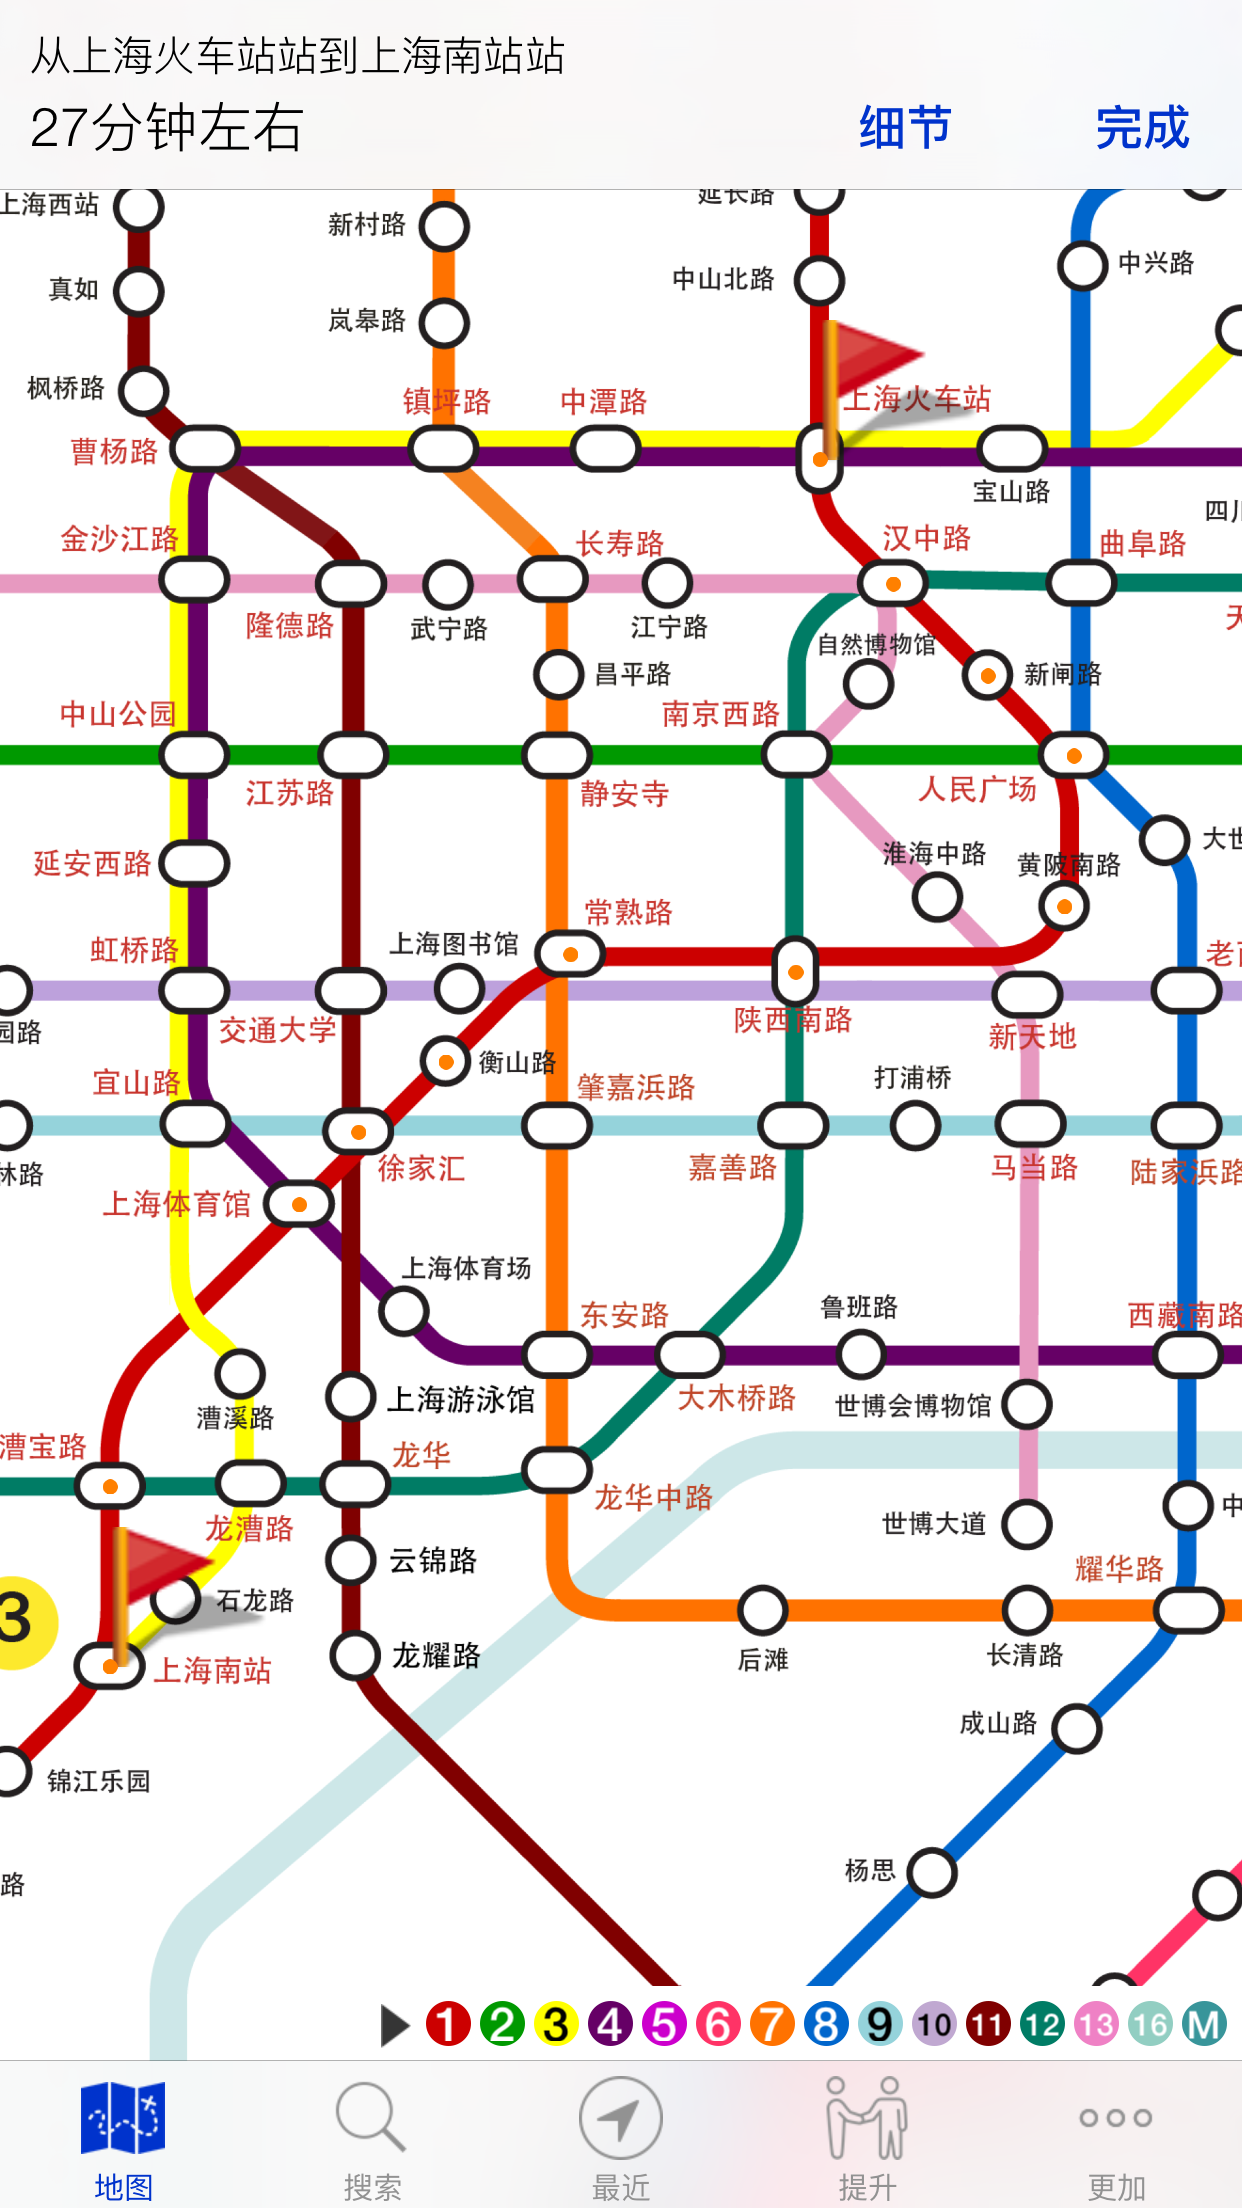 推荐收藏！上海还有20条轨交新线路+延伸段等待开通！沿线板块值得关注 城市的快速发展离不开地铁的强力支撑！！！ - 知乎